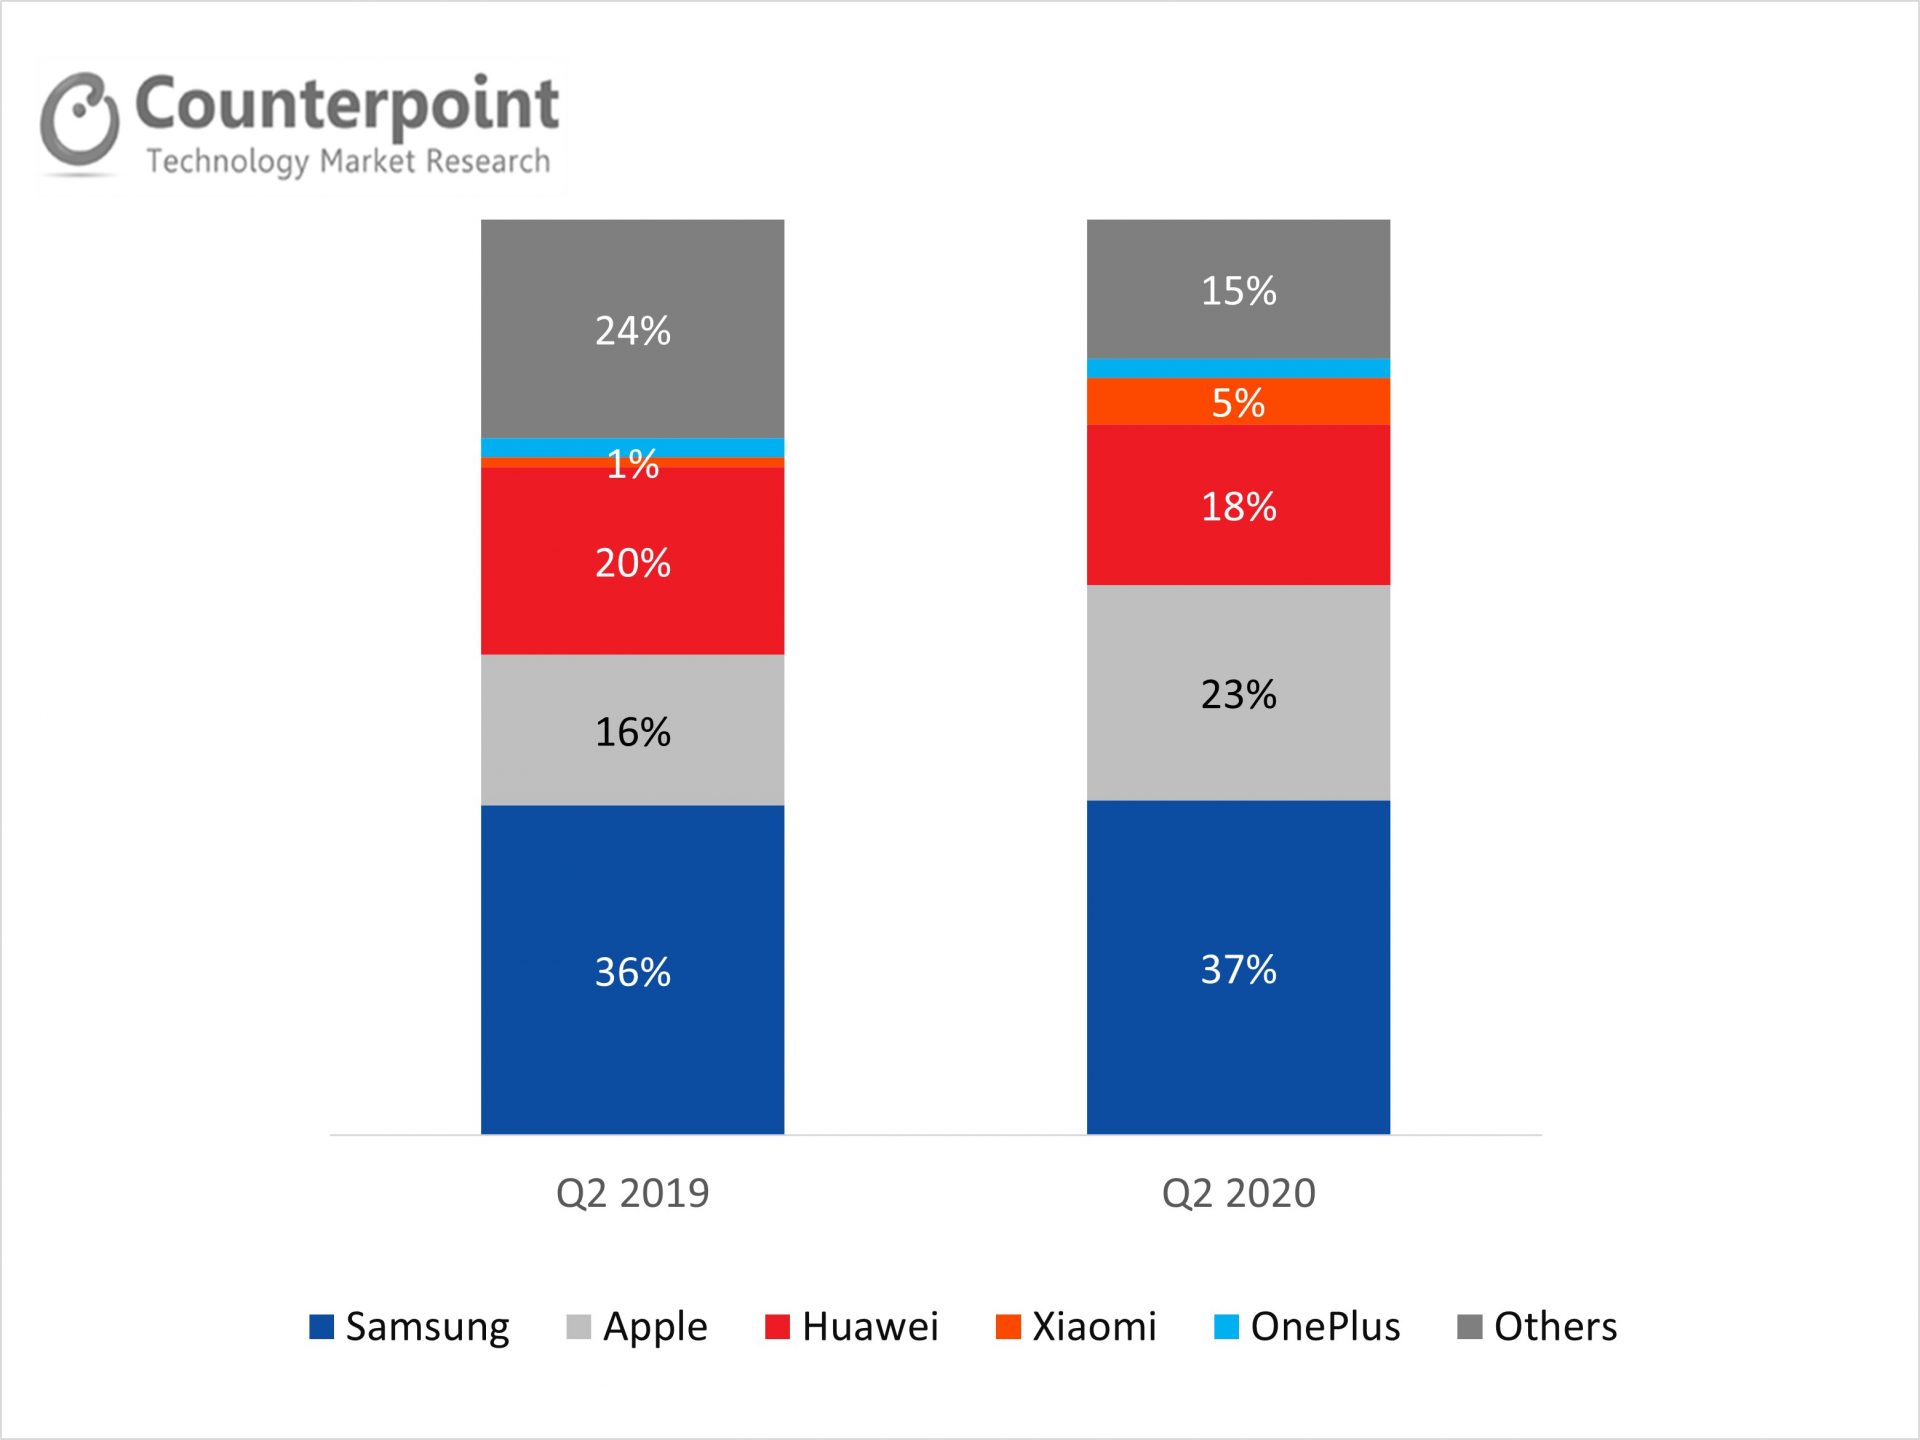 德国智能手机销量品牌份额(%)